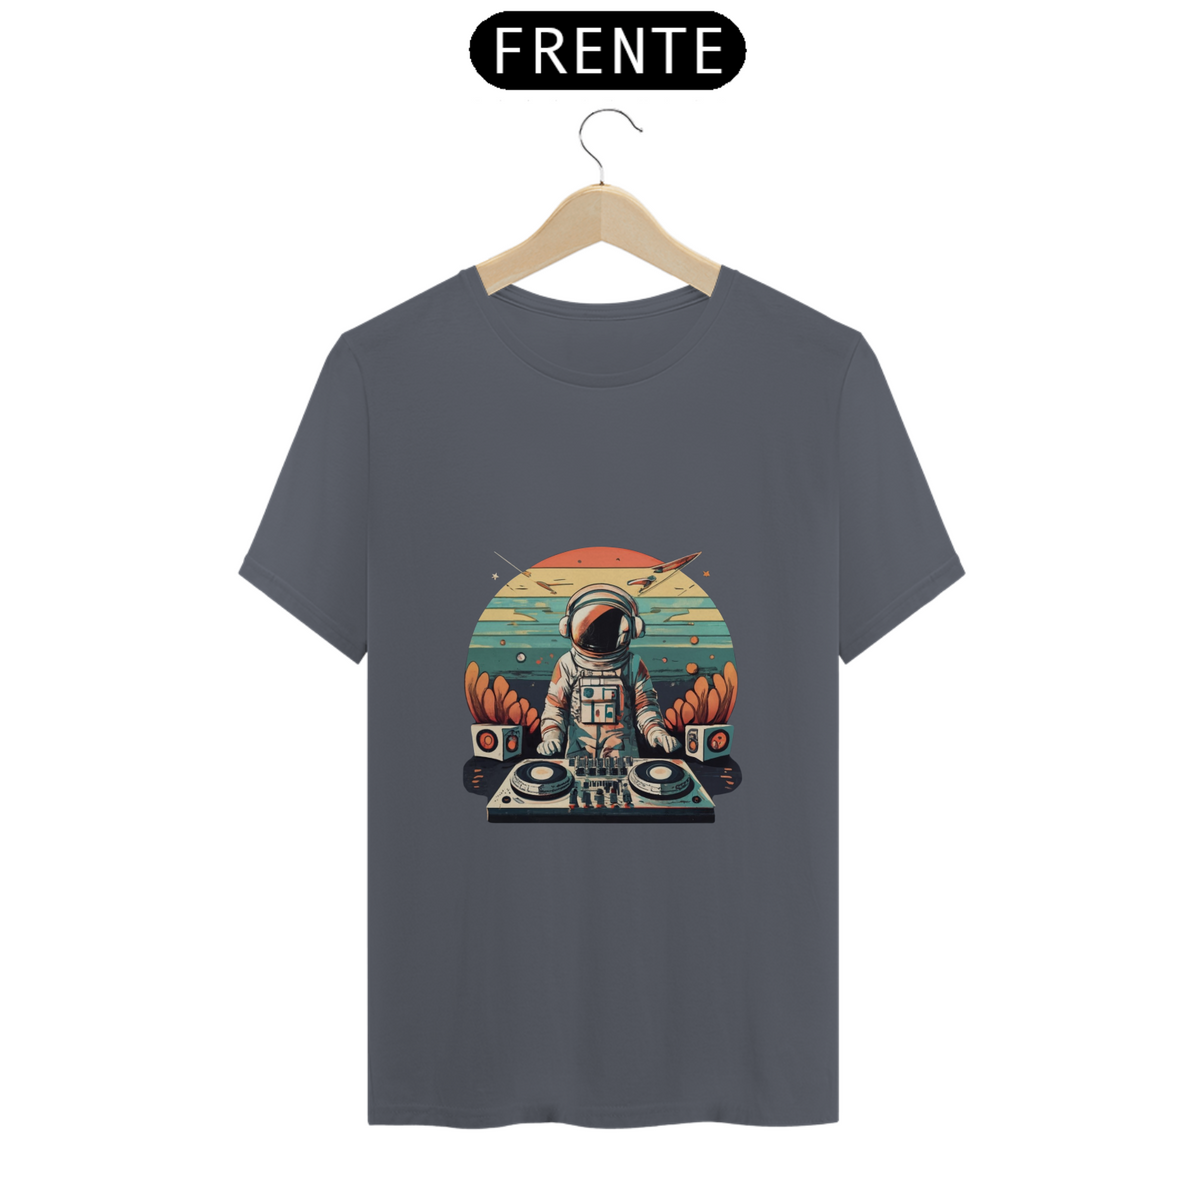 Nome do produto: T-Shirt Pima - Astronaut Dj